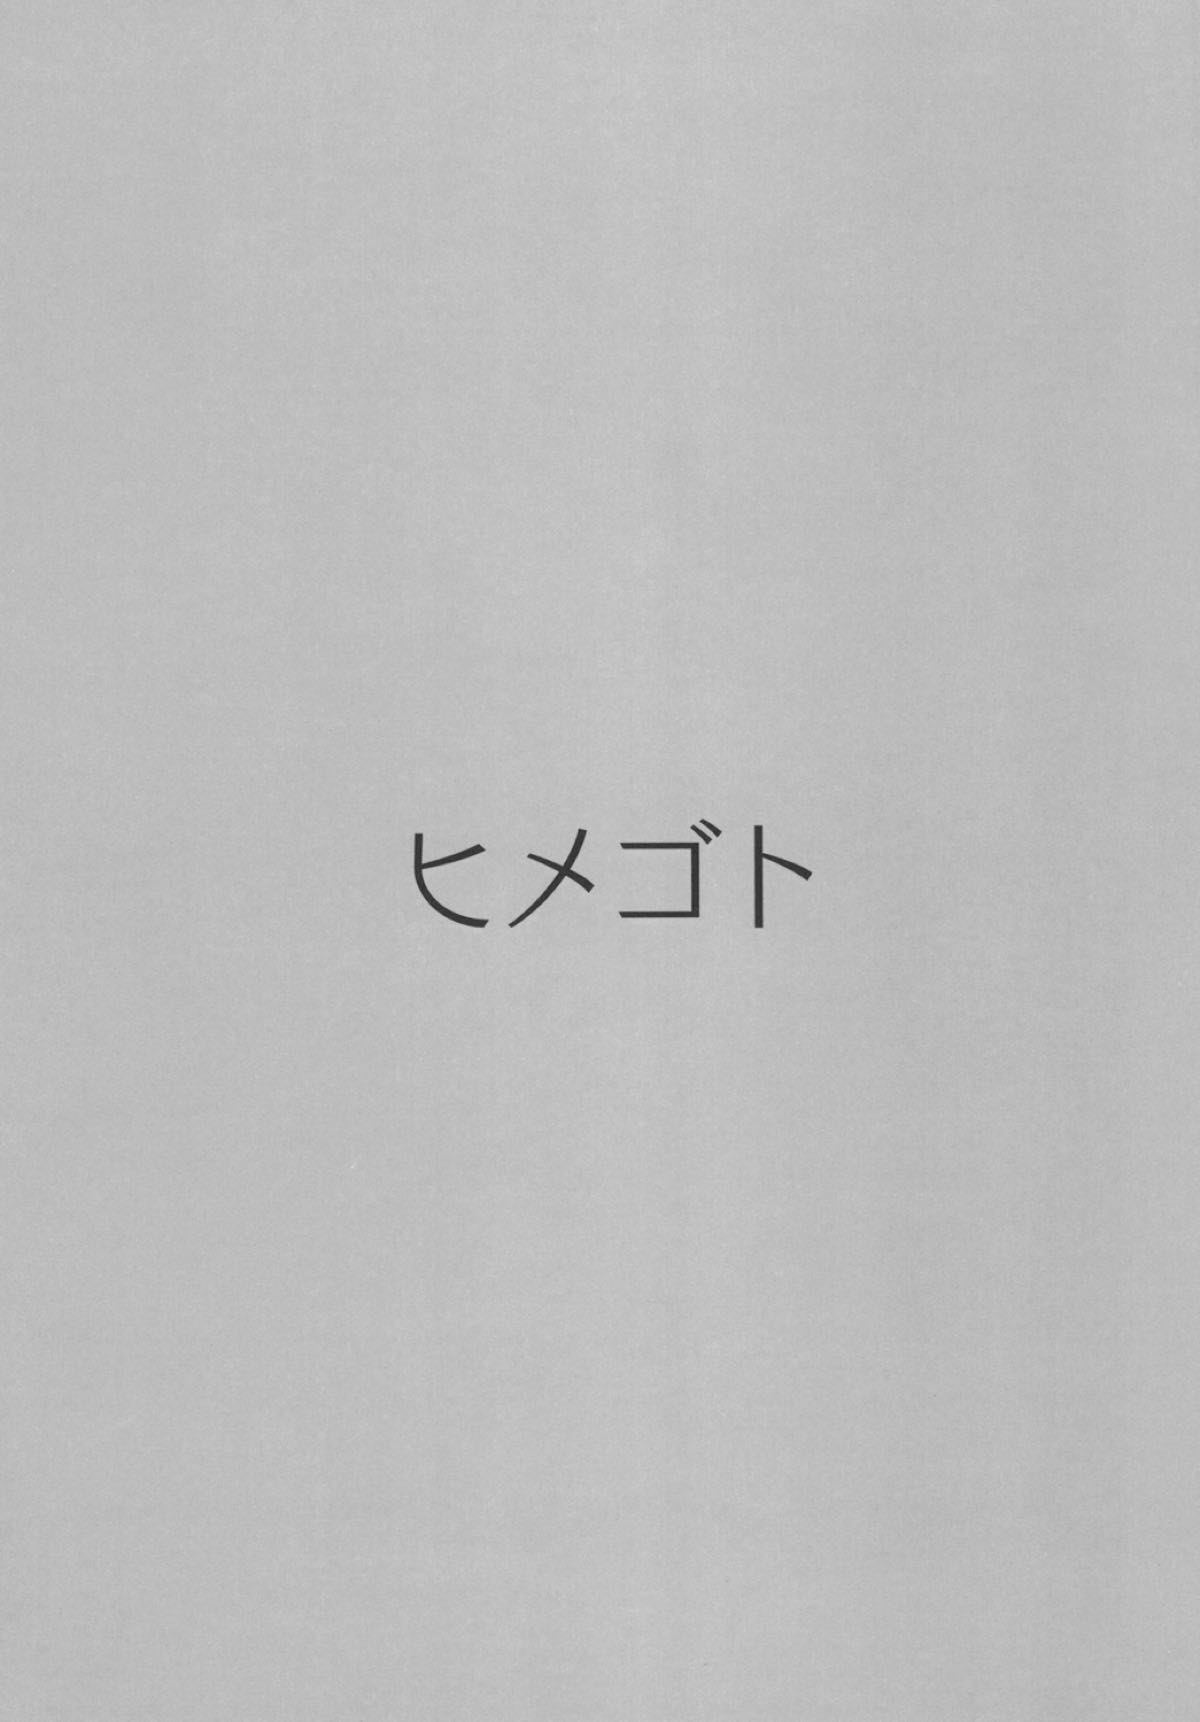 (C93) [Nagashi Soumen (Yuzaki)] Himegoto (Kantai Collection -KanColle-) (C93) [ながしそうめん (ユウザキ)] ヒメゴト (艦隊これくしょん -艦これ-)